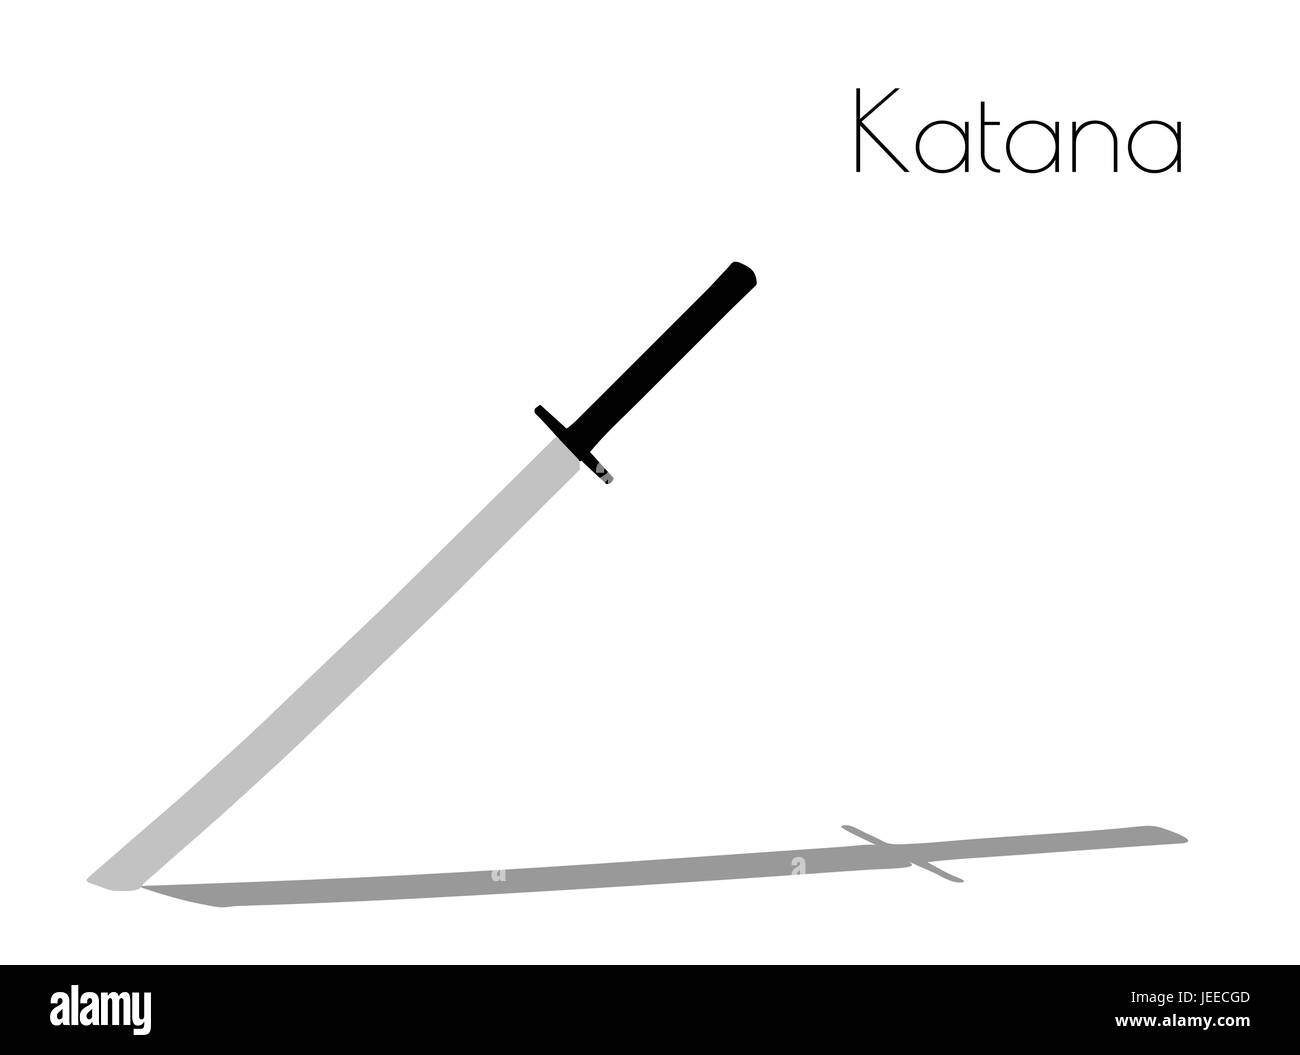 EPS 10 vector illustration of Katana silhouette on white background Stock Vector